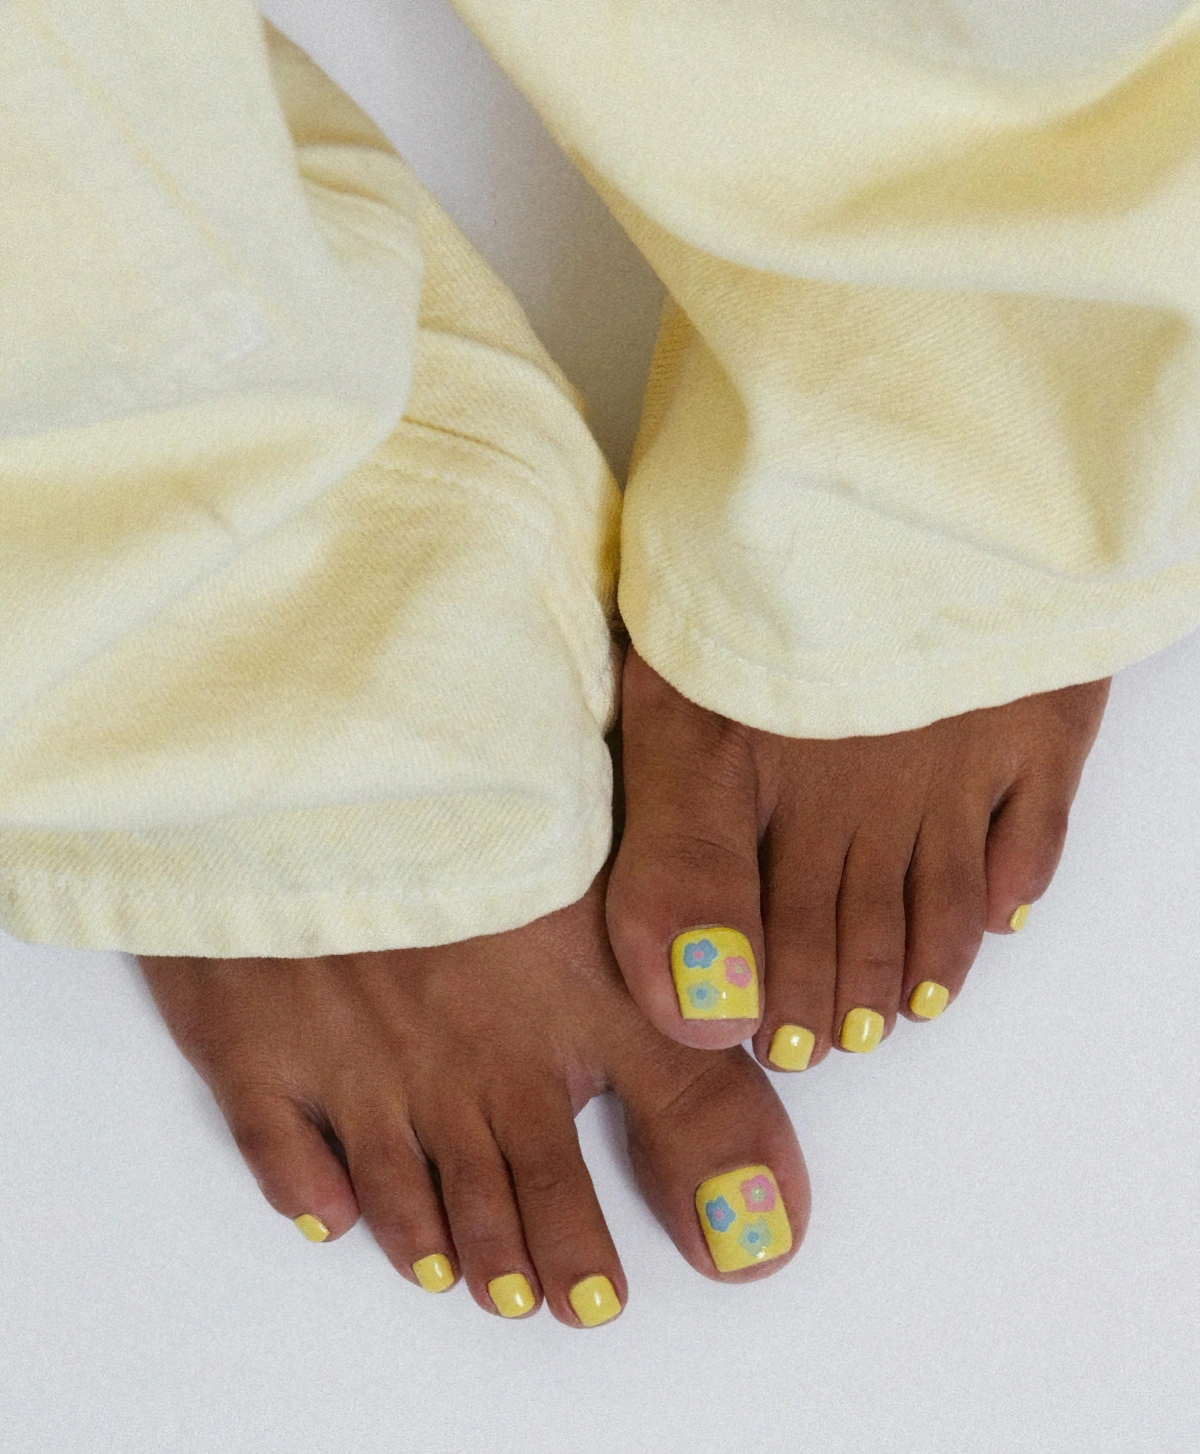 deco pedicure avec un seul ongle nail art vernis jaune motifs fleurs